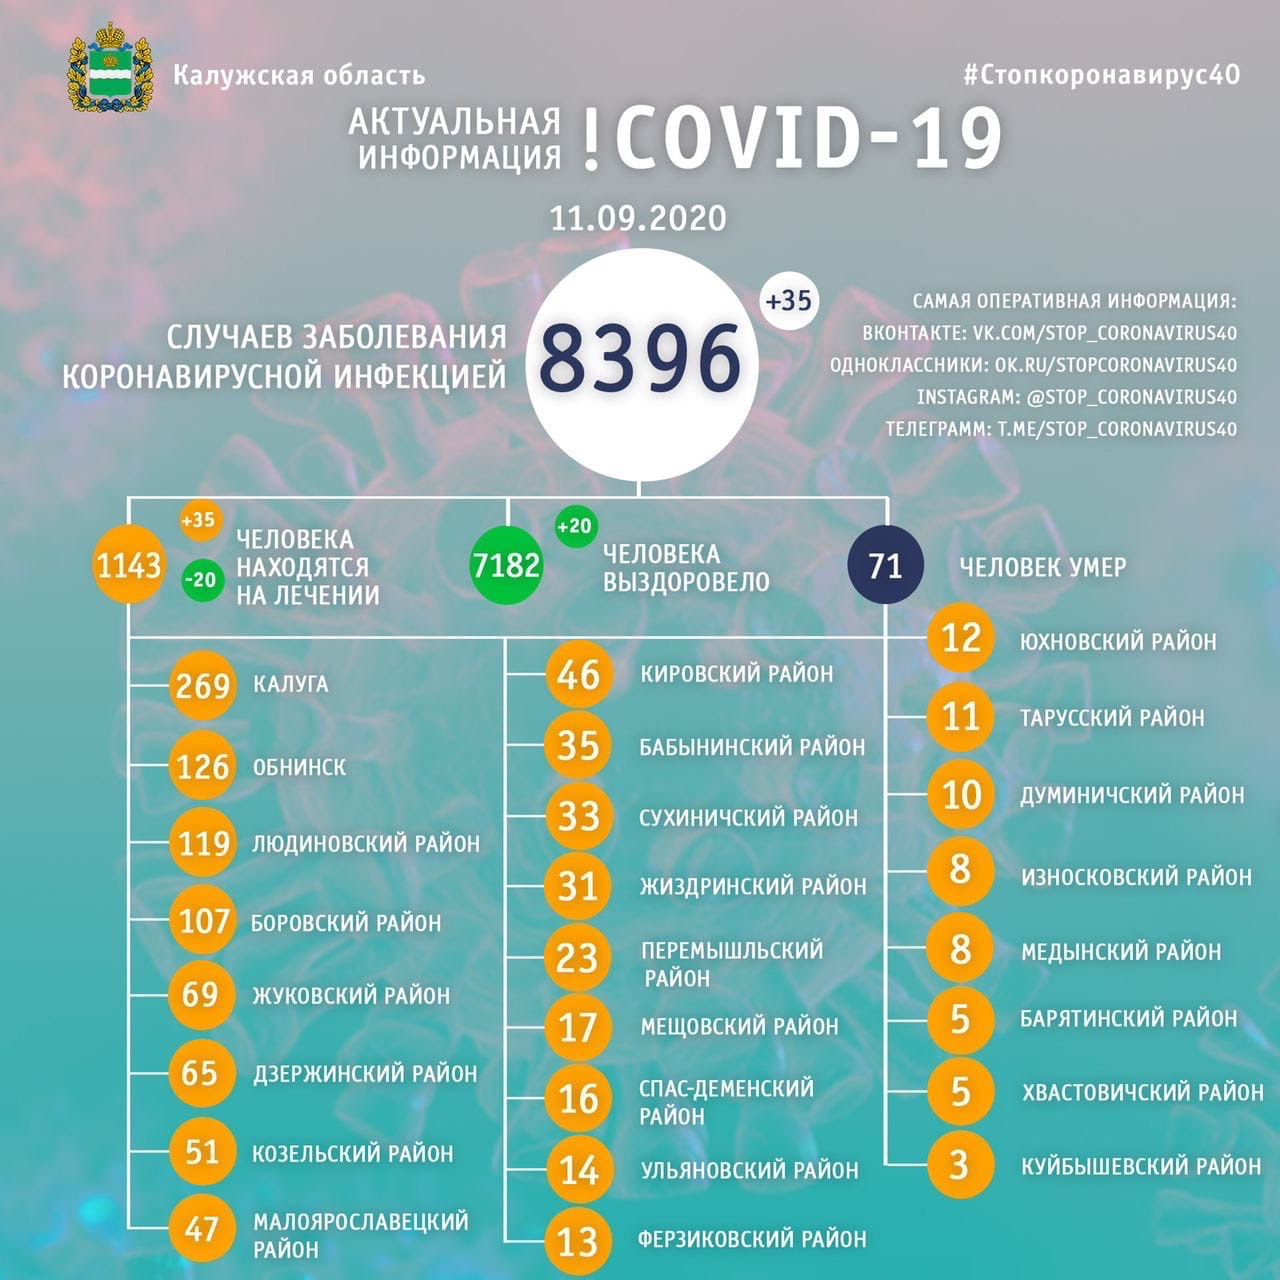 Официальная статистика по коронавирусу в Калужской области на 11 сентября 2020 года.